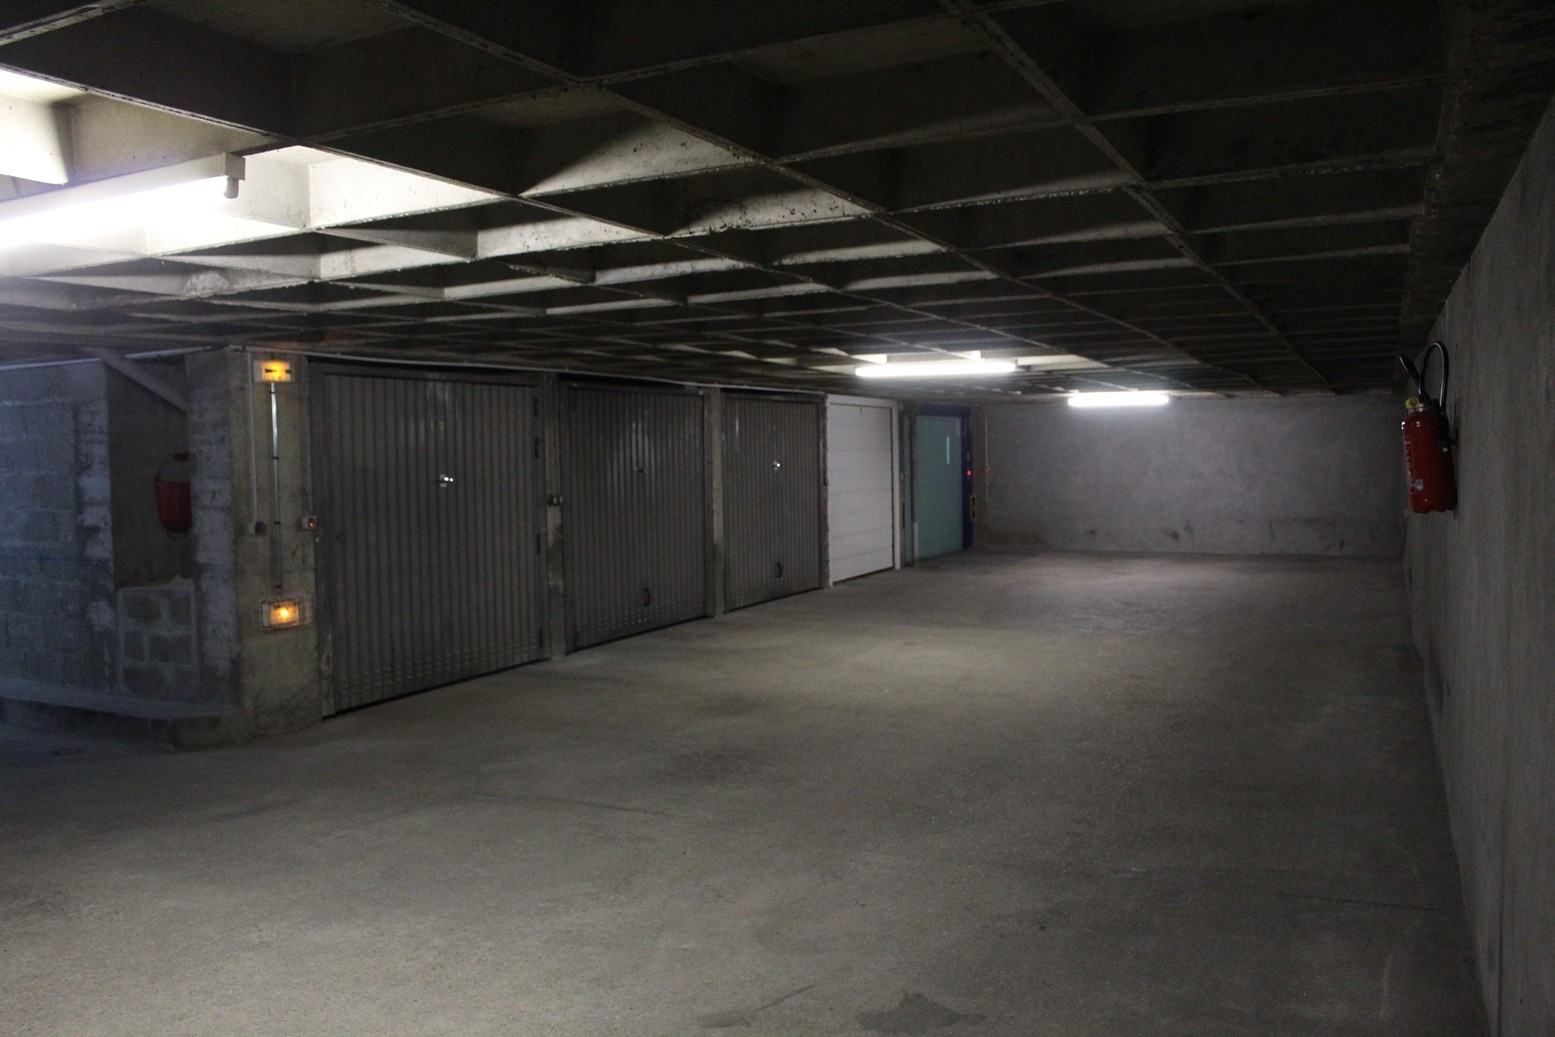 Vente Garage / Parking à Paris Vaugirard 15e arrondissement 0 pièce